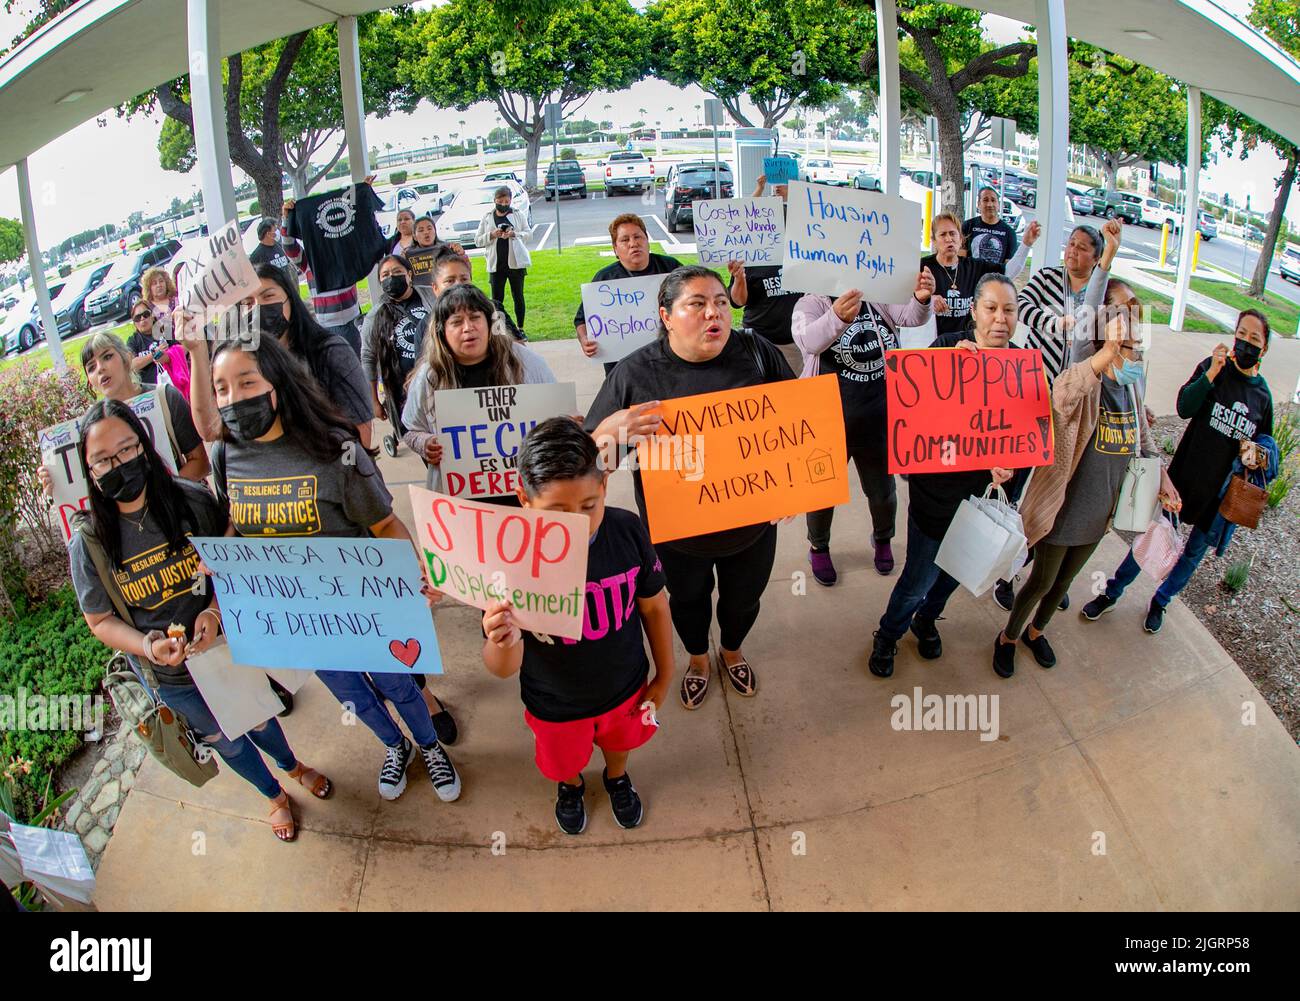 Un gruppo di manifestanti per lo più ispanici porta segnali che richiedono il controllo del canone di affitto per una riunione del consiglio comunale a Costa Mesa, CA. Foto Stock